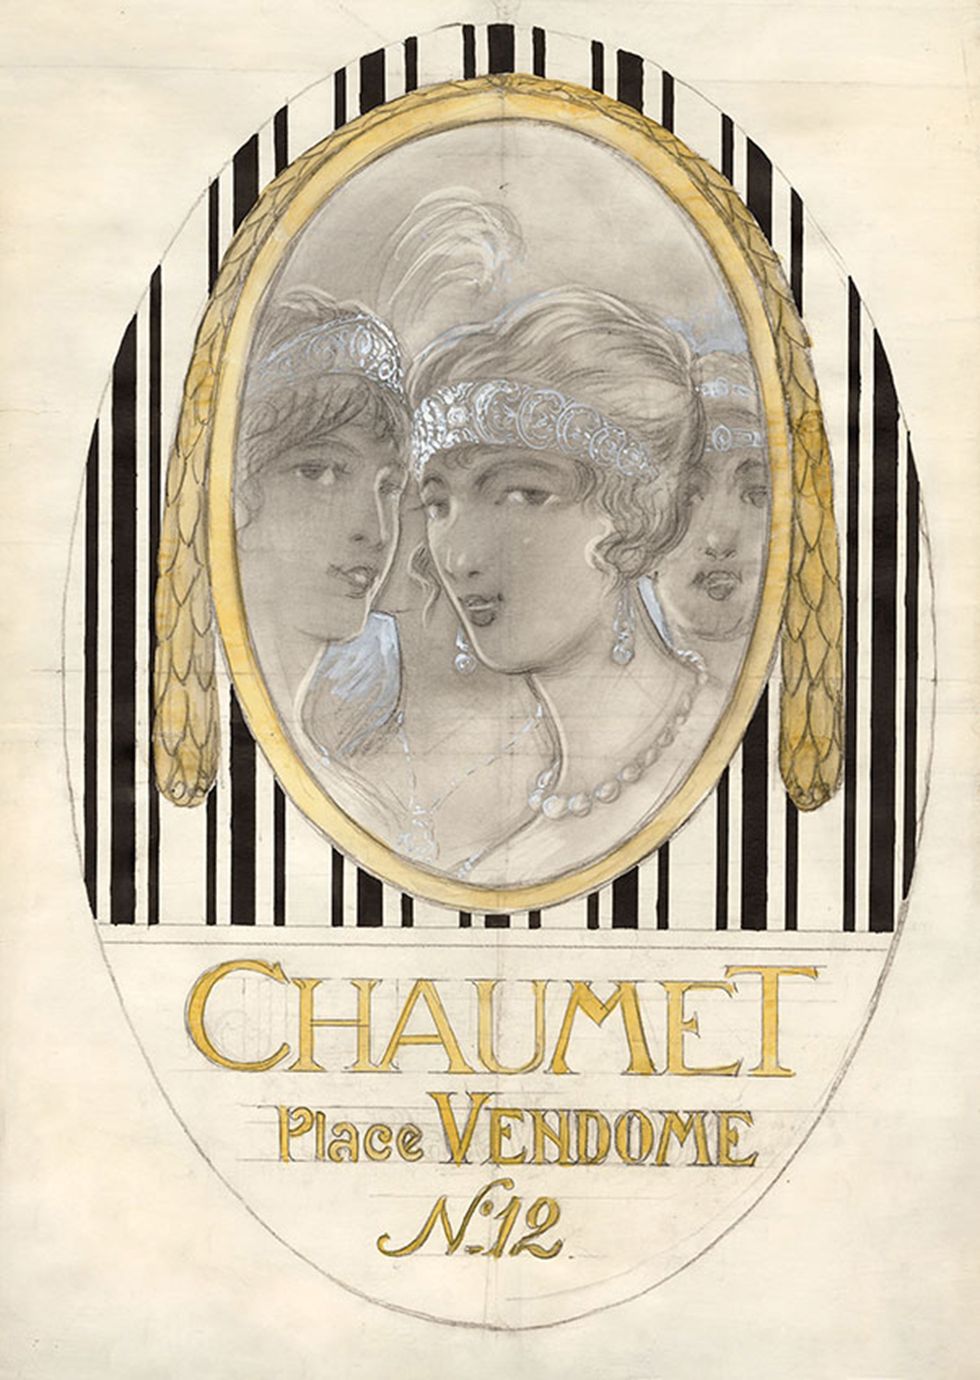 約瑟芬的形象﻿曾於1920年代出現在chaumet的宣傳圖上。